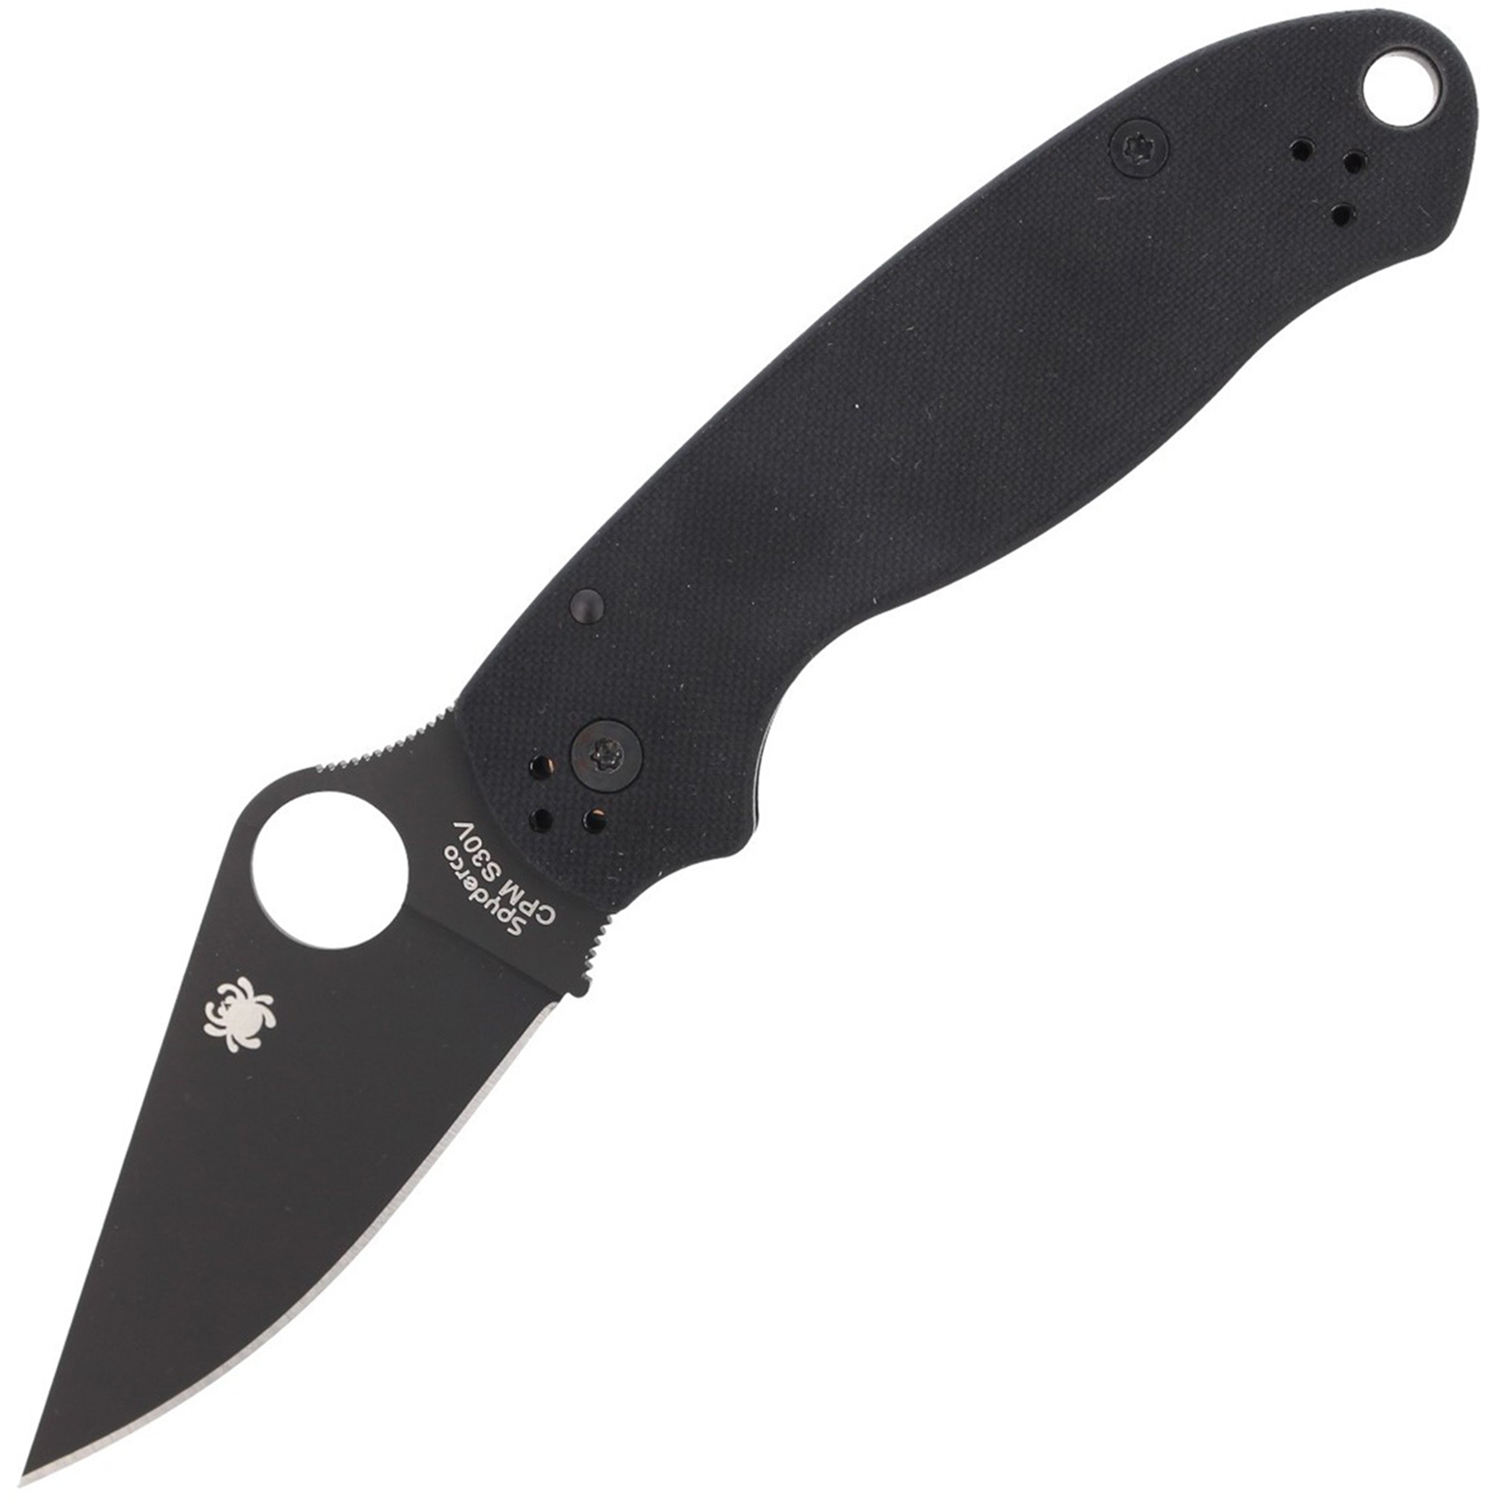 фото Нож складной para 3 - spyderco 223gpbk, сталь cpm® s30v™ black dlc coated plain, рукоять стеклотекстолит g10, чёрный